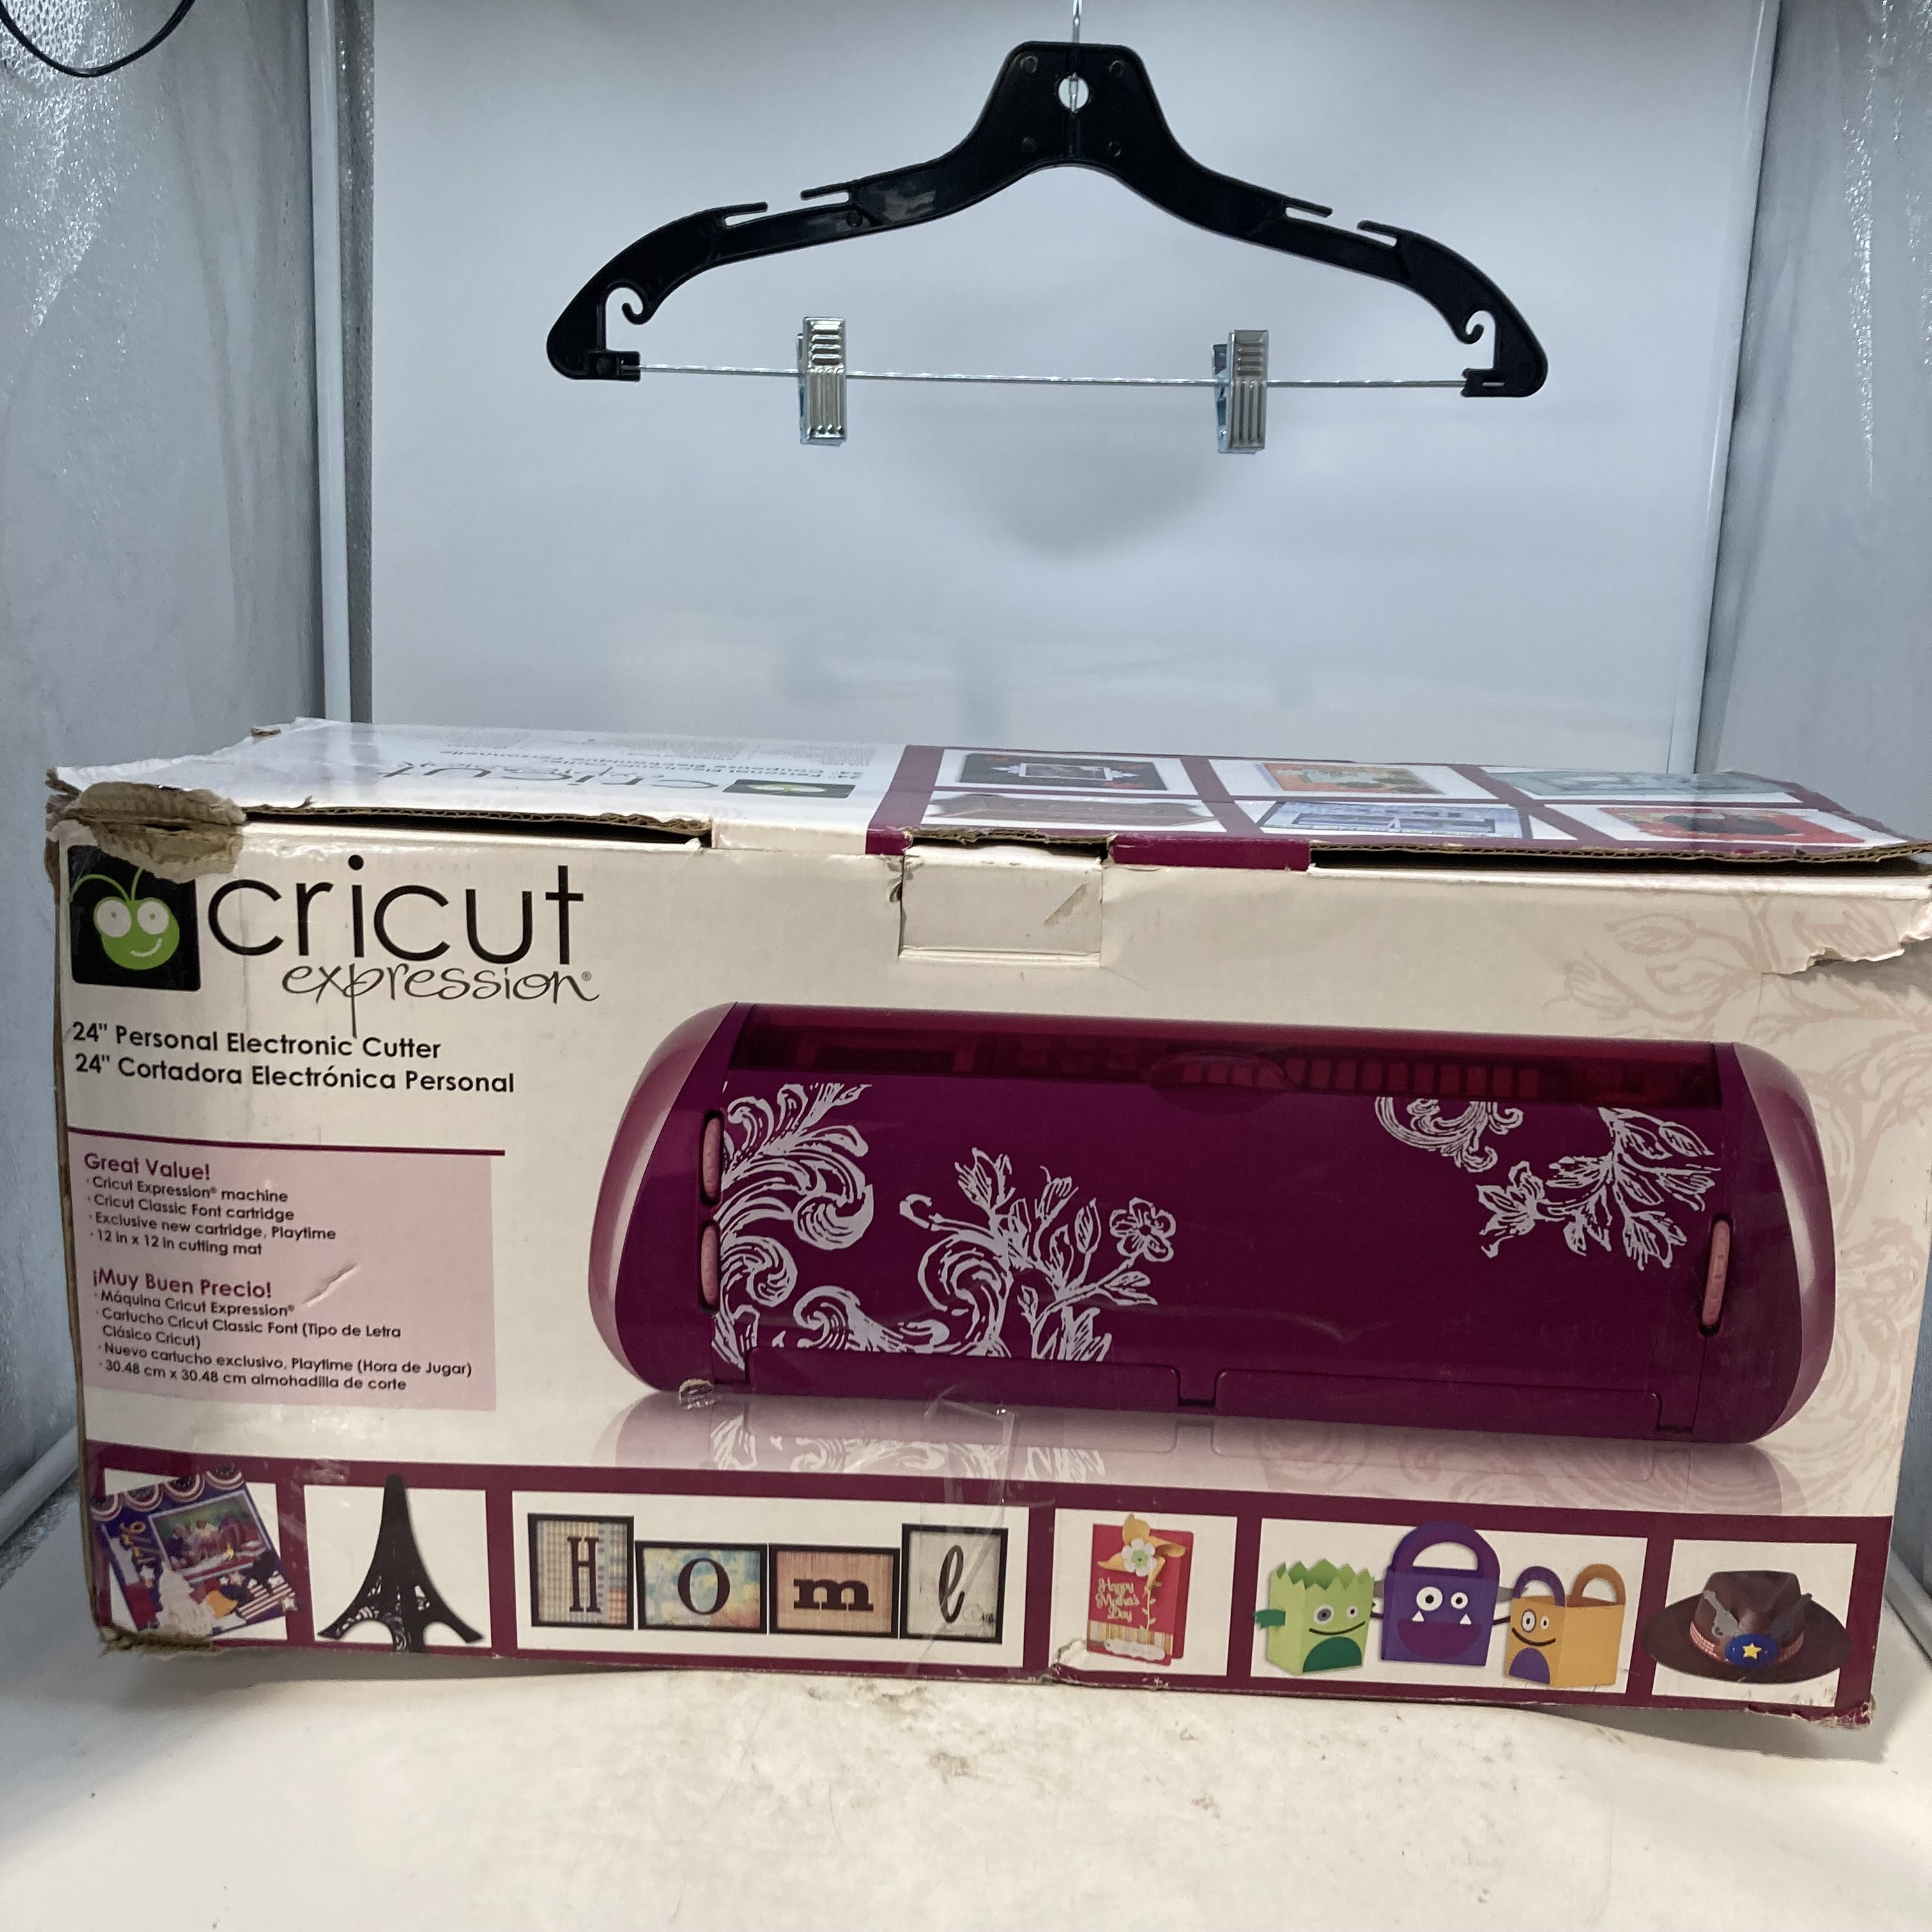 Brand New Cricut Expression Cutting Machine “24” Inch - Die